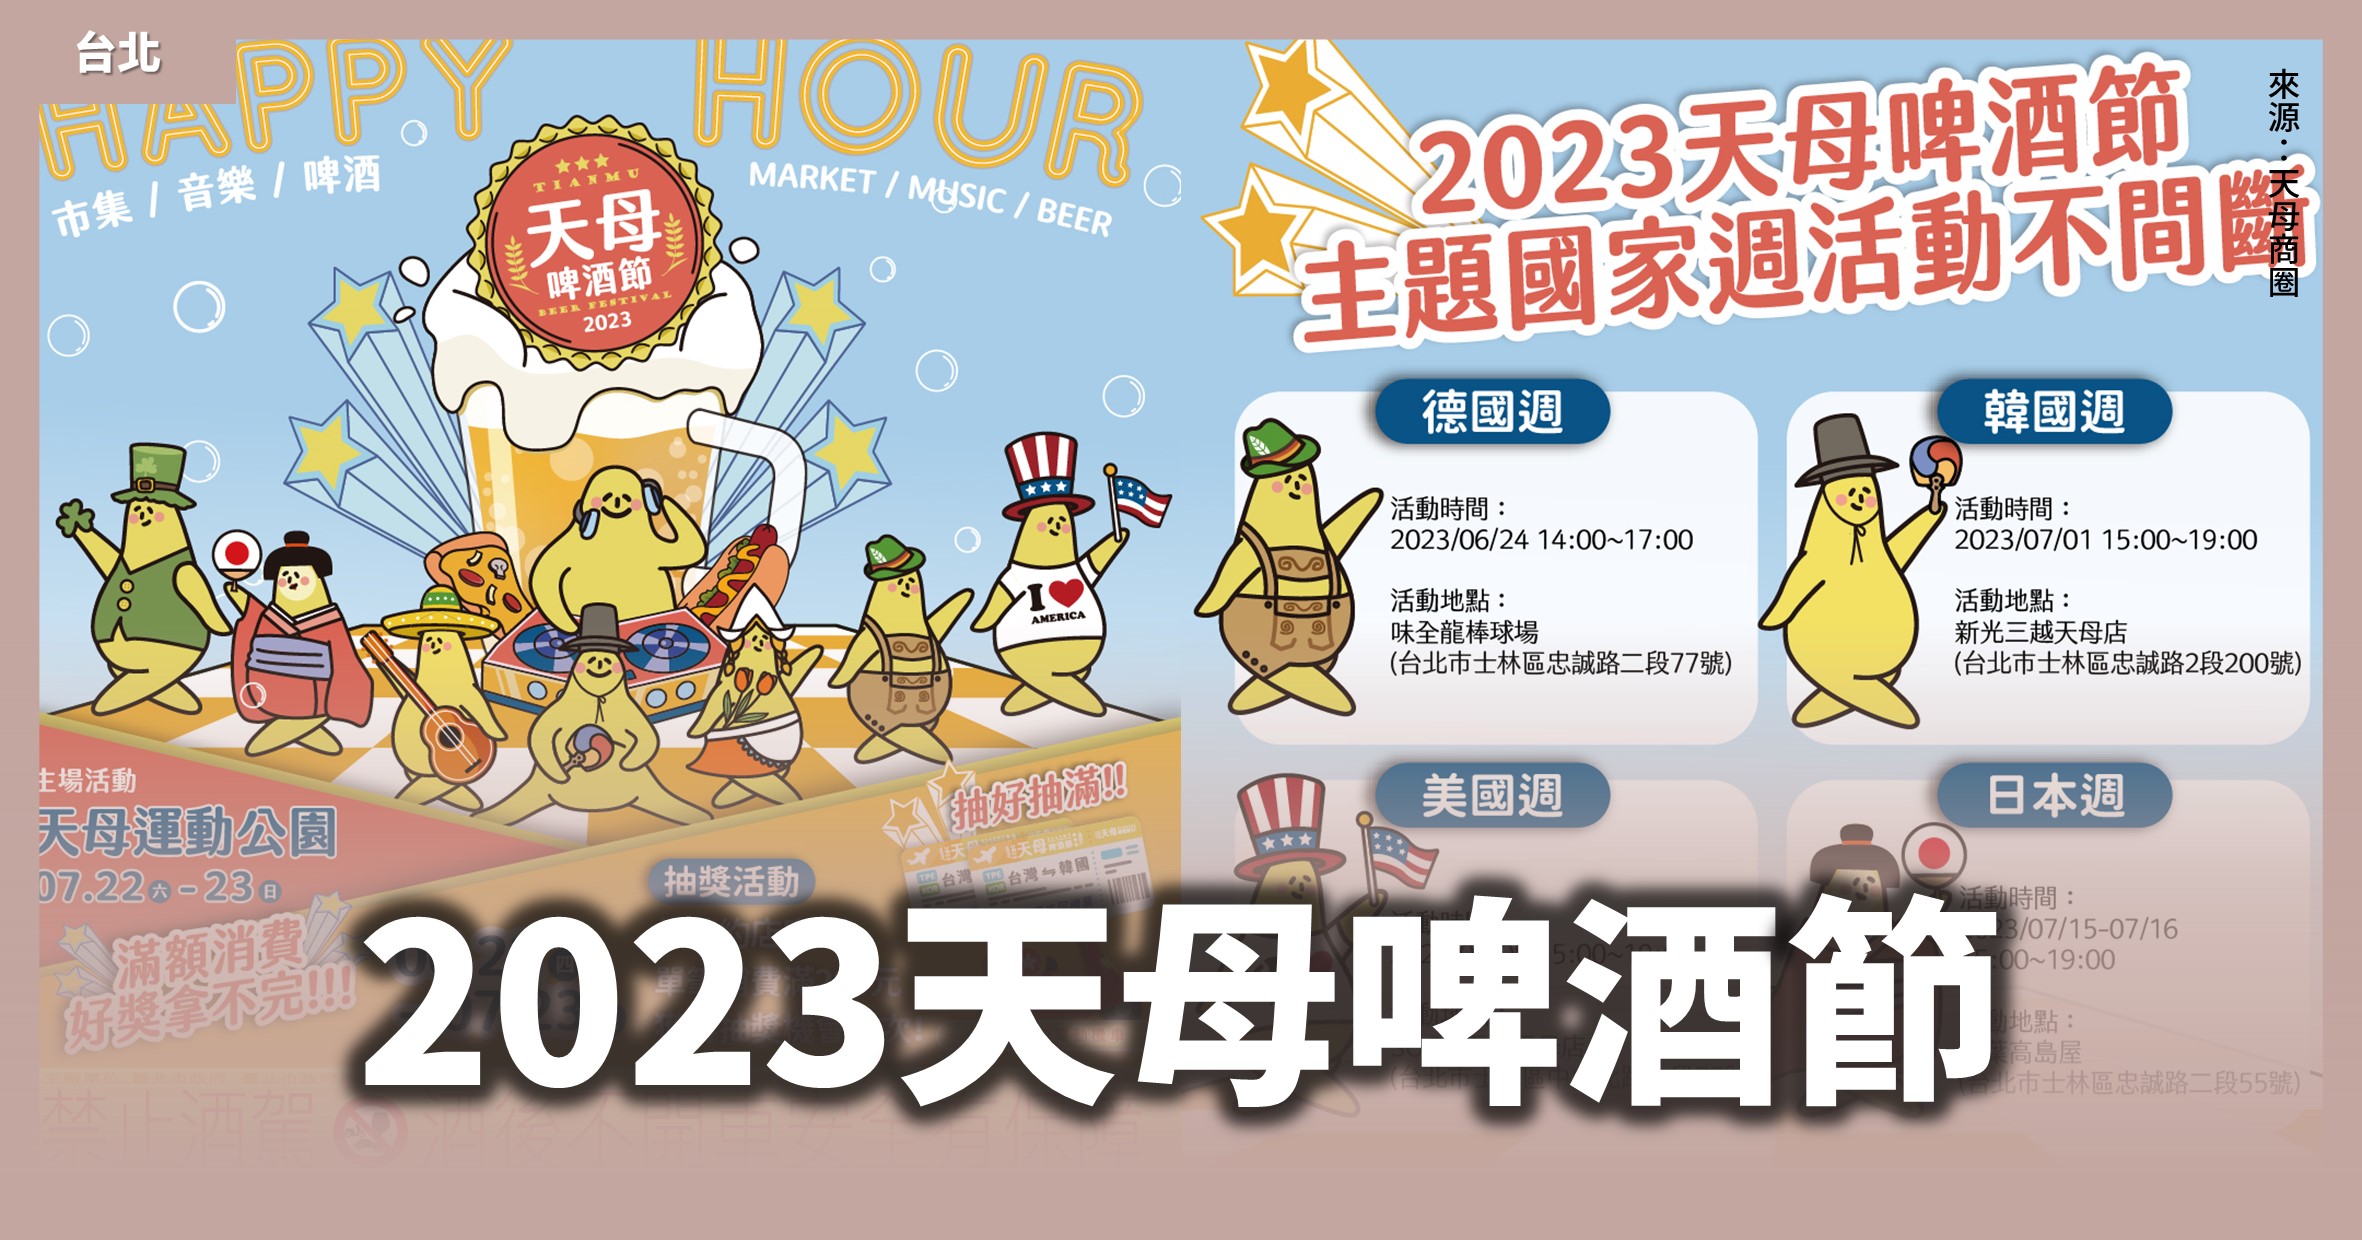 台北活動【2023天母啤酒節】前期4場活動、7月主場美食與音樂